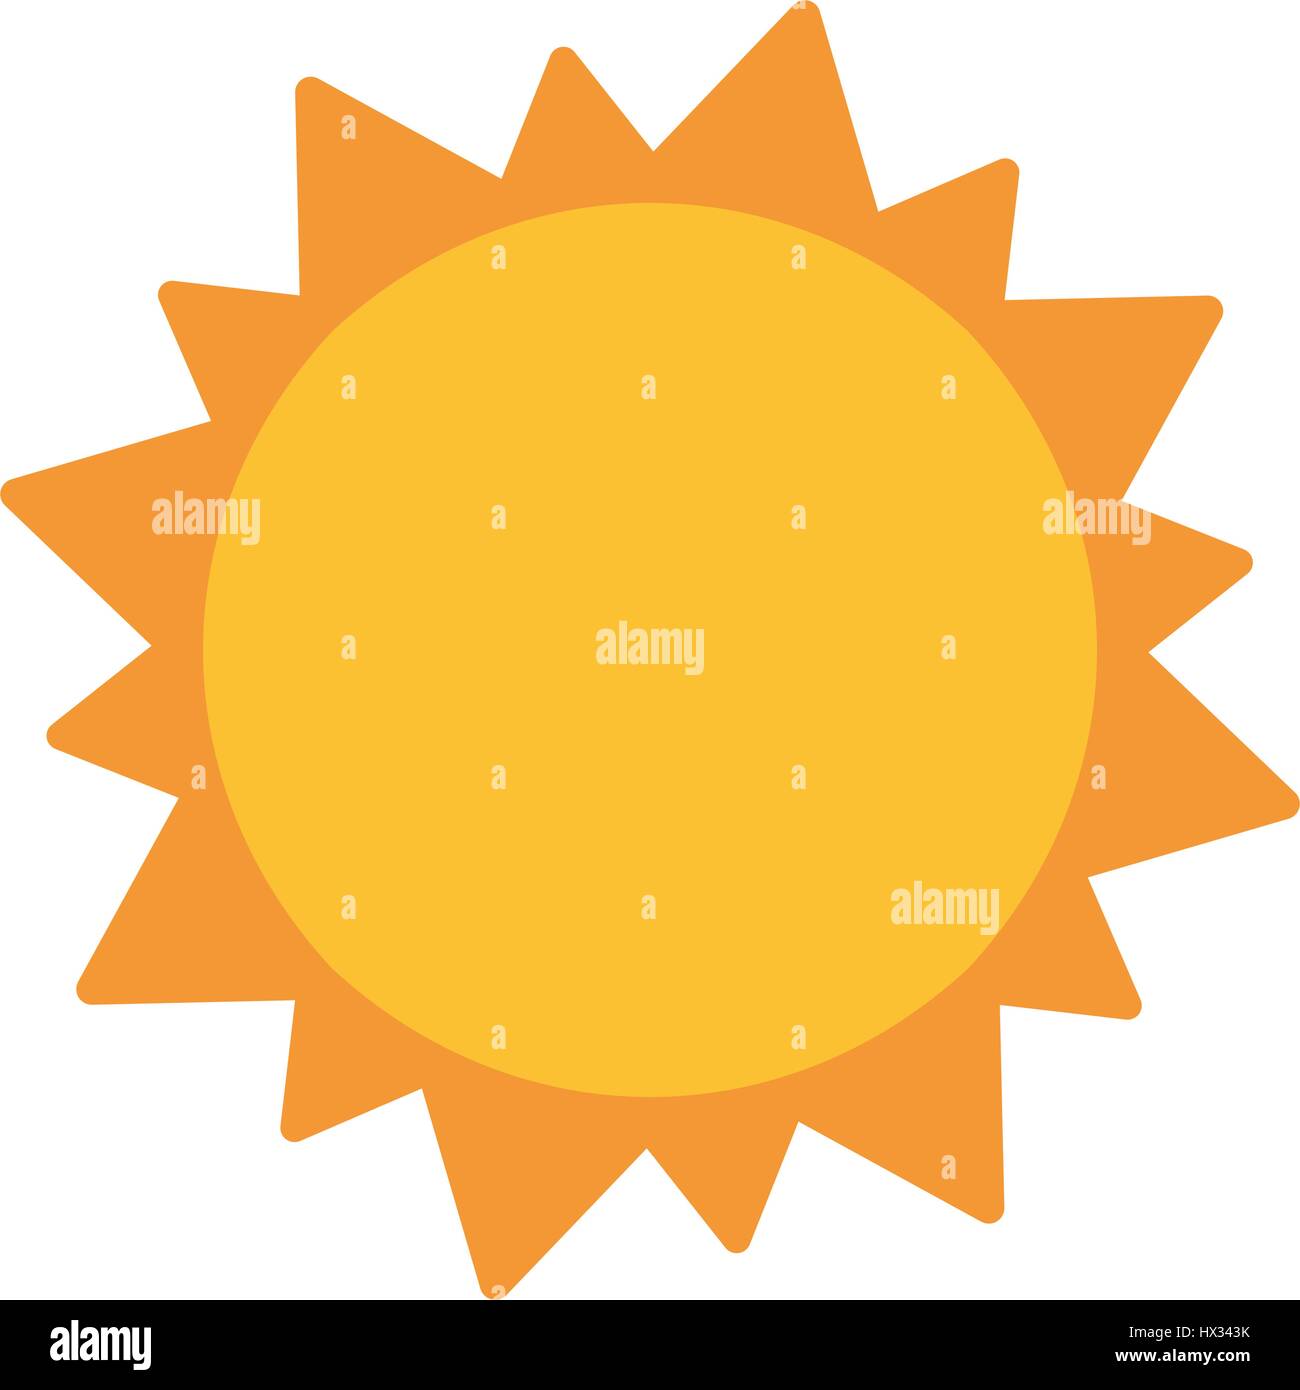 Sun Sistema Solare Astronomia Illustrazione Vettoriale